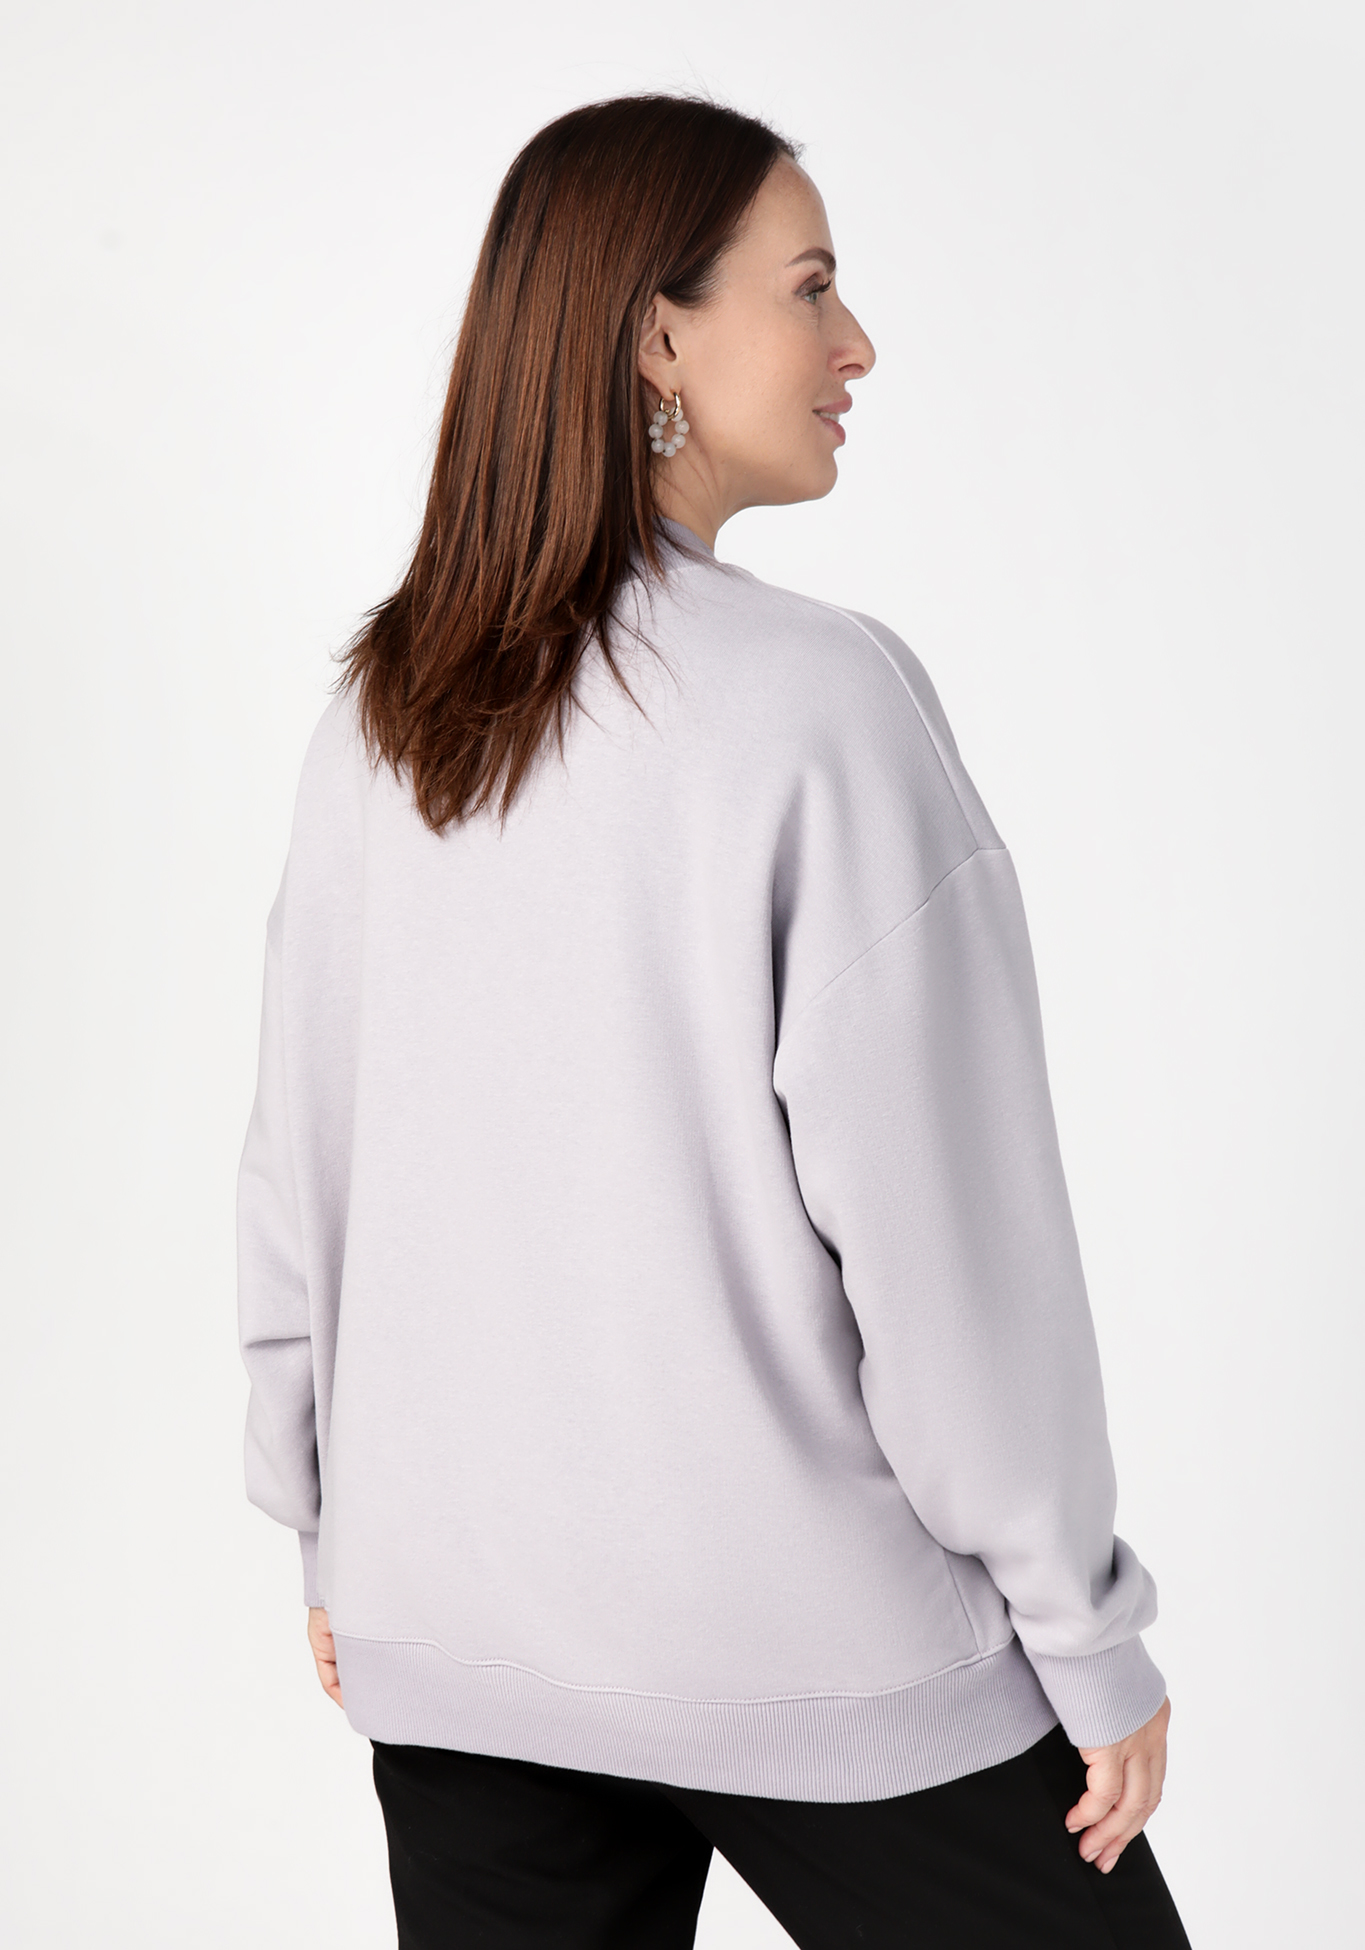 Свитшот с вышивкой Надежда Ангарская, размер 42, цвет сиреневый - фото 3